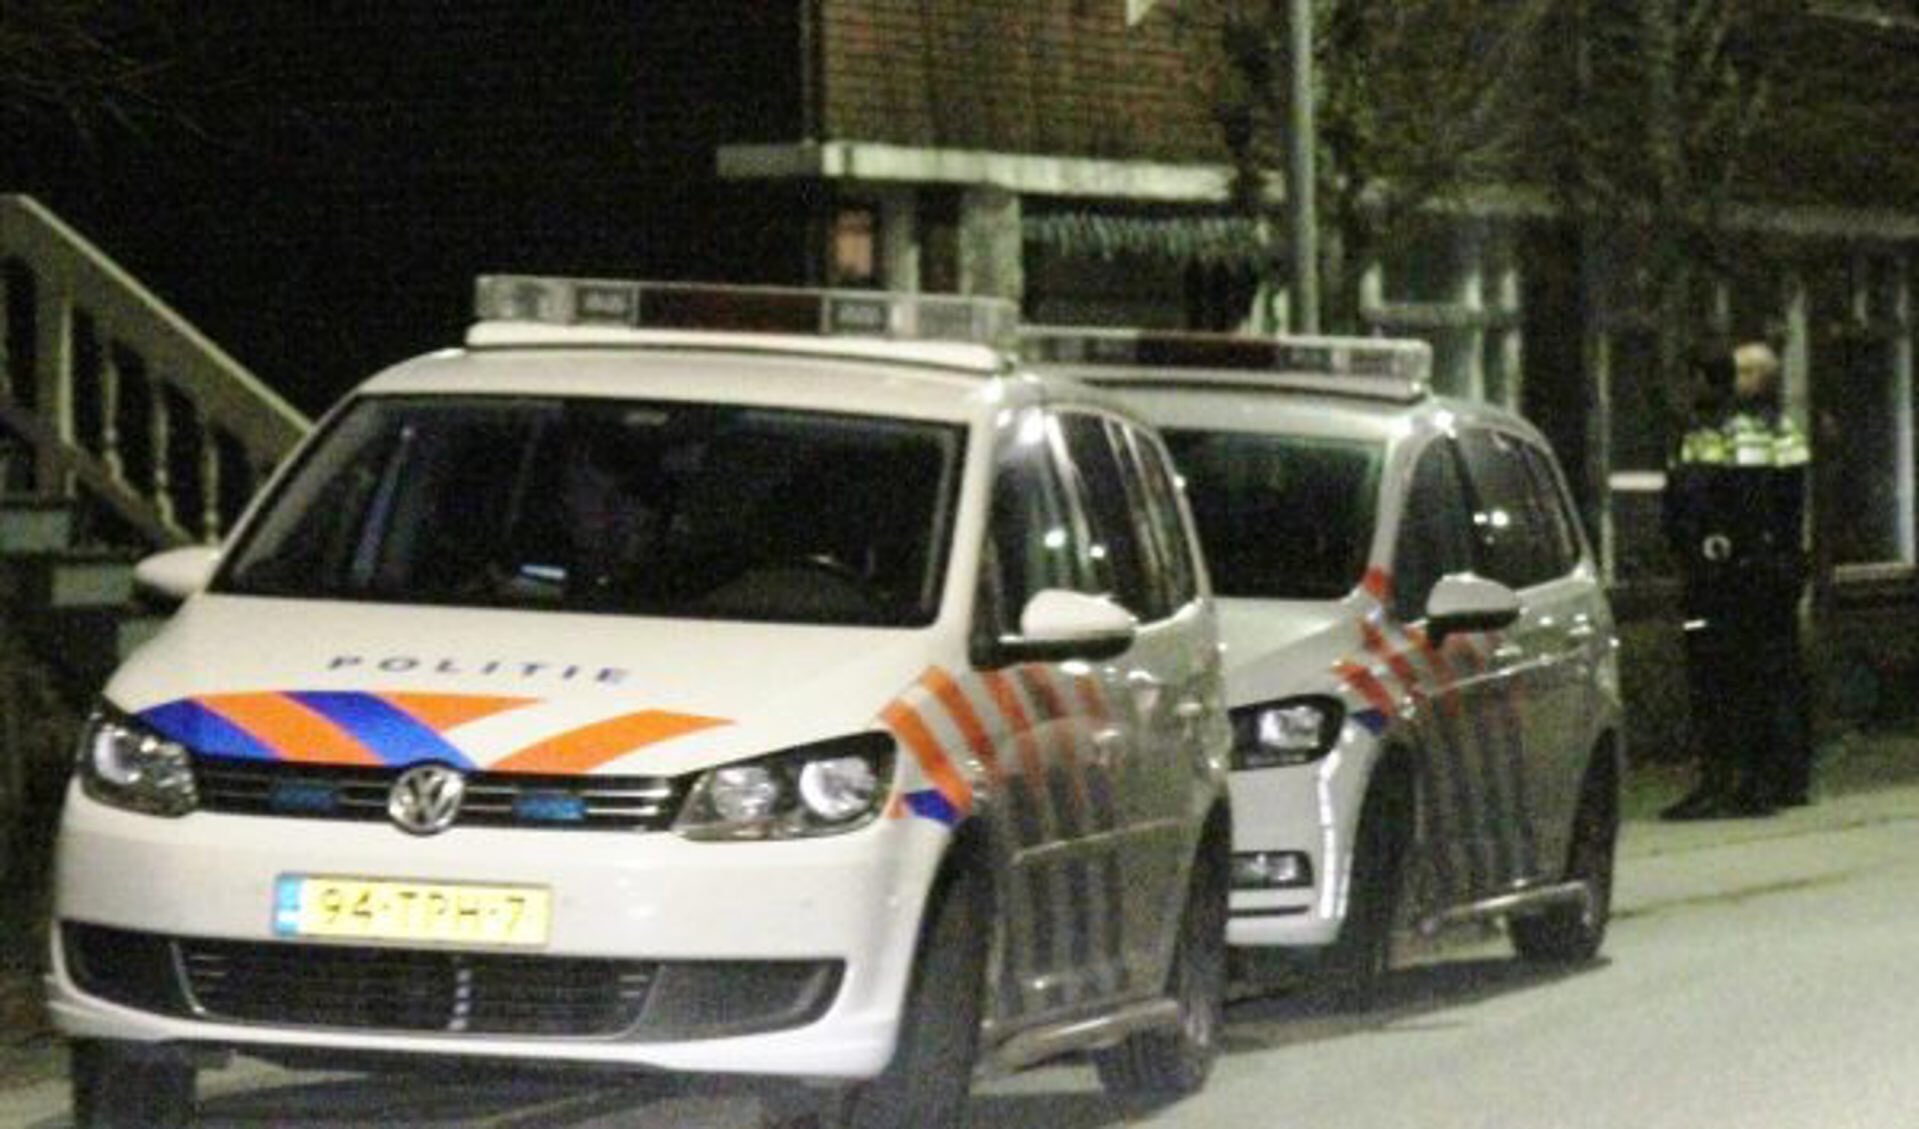 De politie werd even na middernacht opgeroepen voor een melding van huiselijk geweld langs de West-Kinderdijk in Alblasserdam.